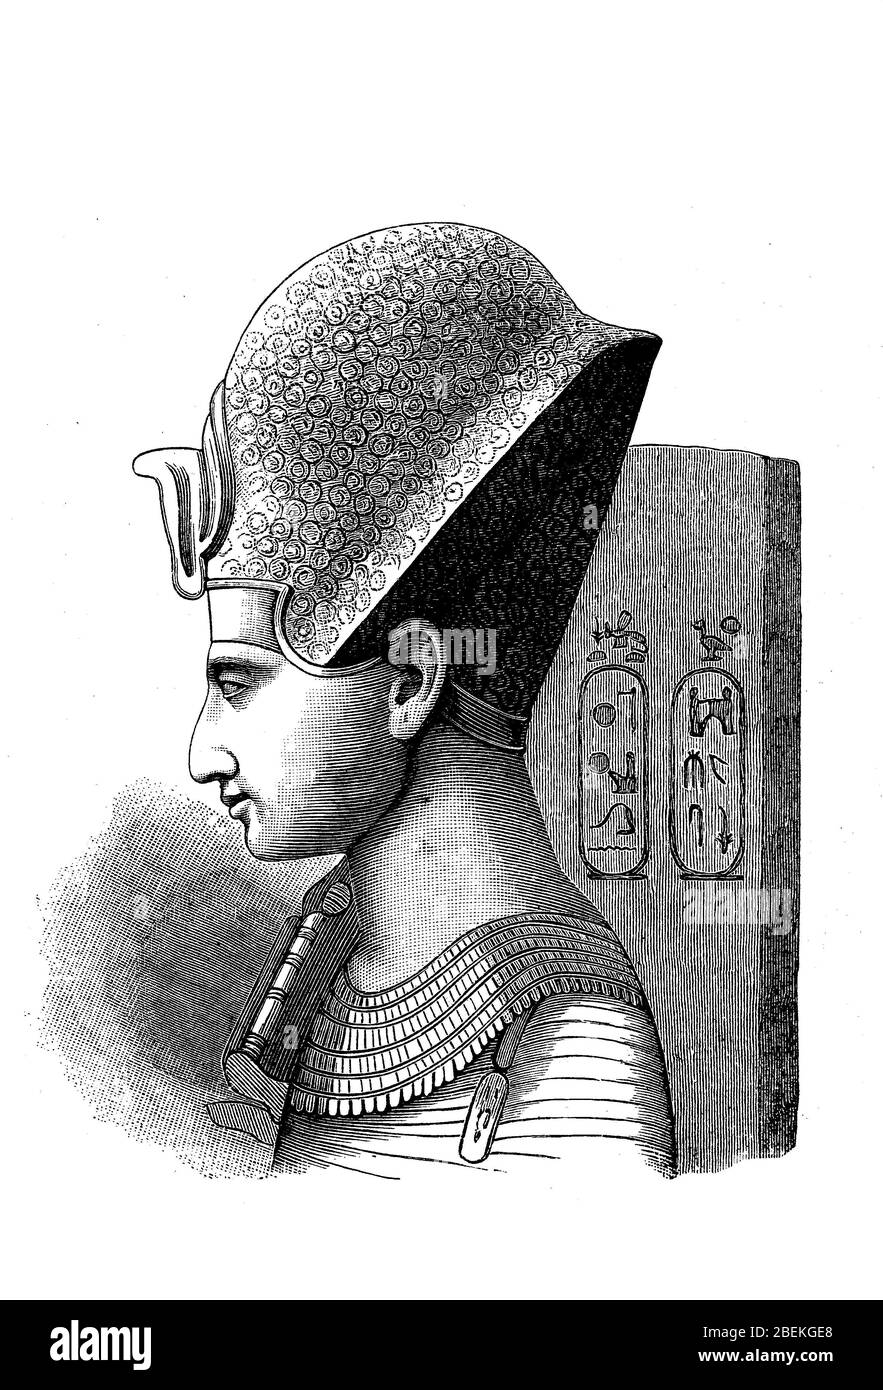 Capo della statua ritratto di Ramses, Ramses II, chiamata anche Rameses il Grande, 1303 a.C.; - 1213 a.C., fu il terzo antico re egiziano, Faraone, della diciannovesima dinastia del nuovo Regno. Regnò circa 66 anni dal 1279 al 1213 a.C. / Kopf der Porträtstatue von Ramses, Ramses II., auch Ramses der Große genannt, 1303 v. Chr.; - 1213 v. Chr., war der dritte altägyptische König, Pharao, aus der 19. Dynastie des Neuen Reichs. Er regierte rund 66 Jahre von 1279 bis 1213 v. Chr', Historiisch, riproduzione digitale migliorata di un originale del 19 ° secolo / digitale Reproduktion einer origine Foto Stock